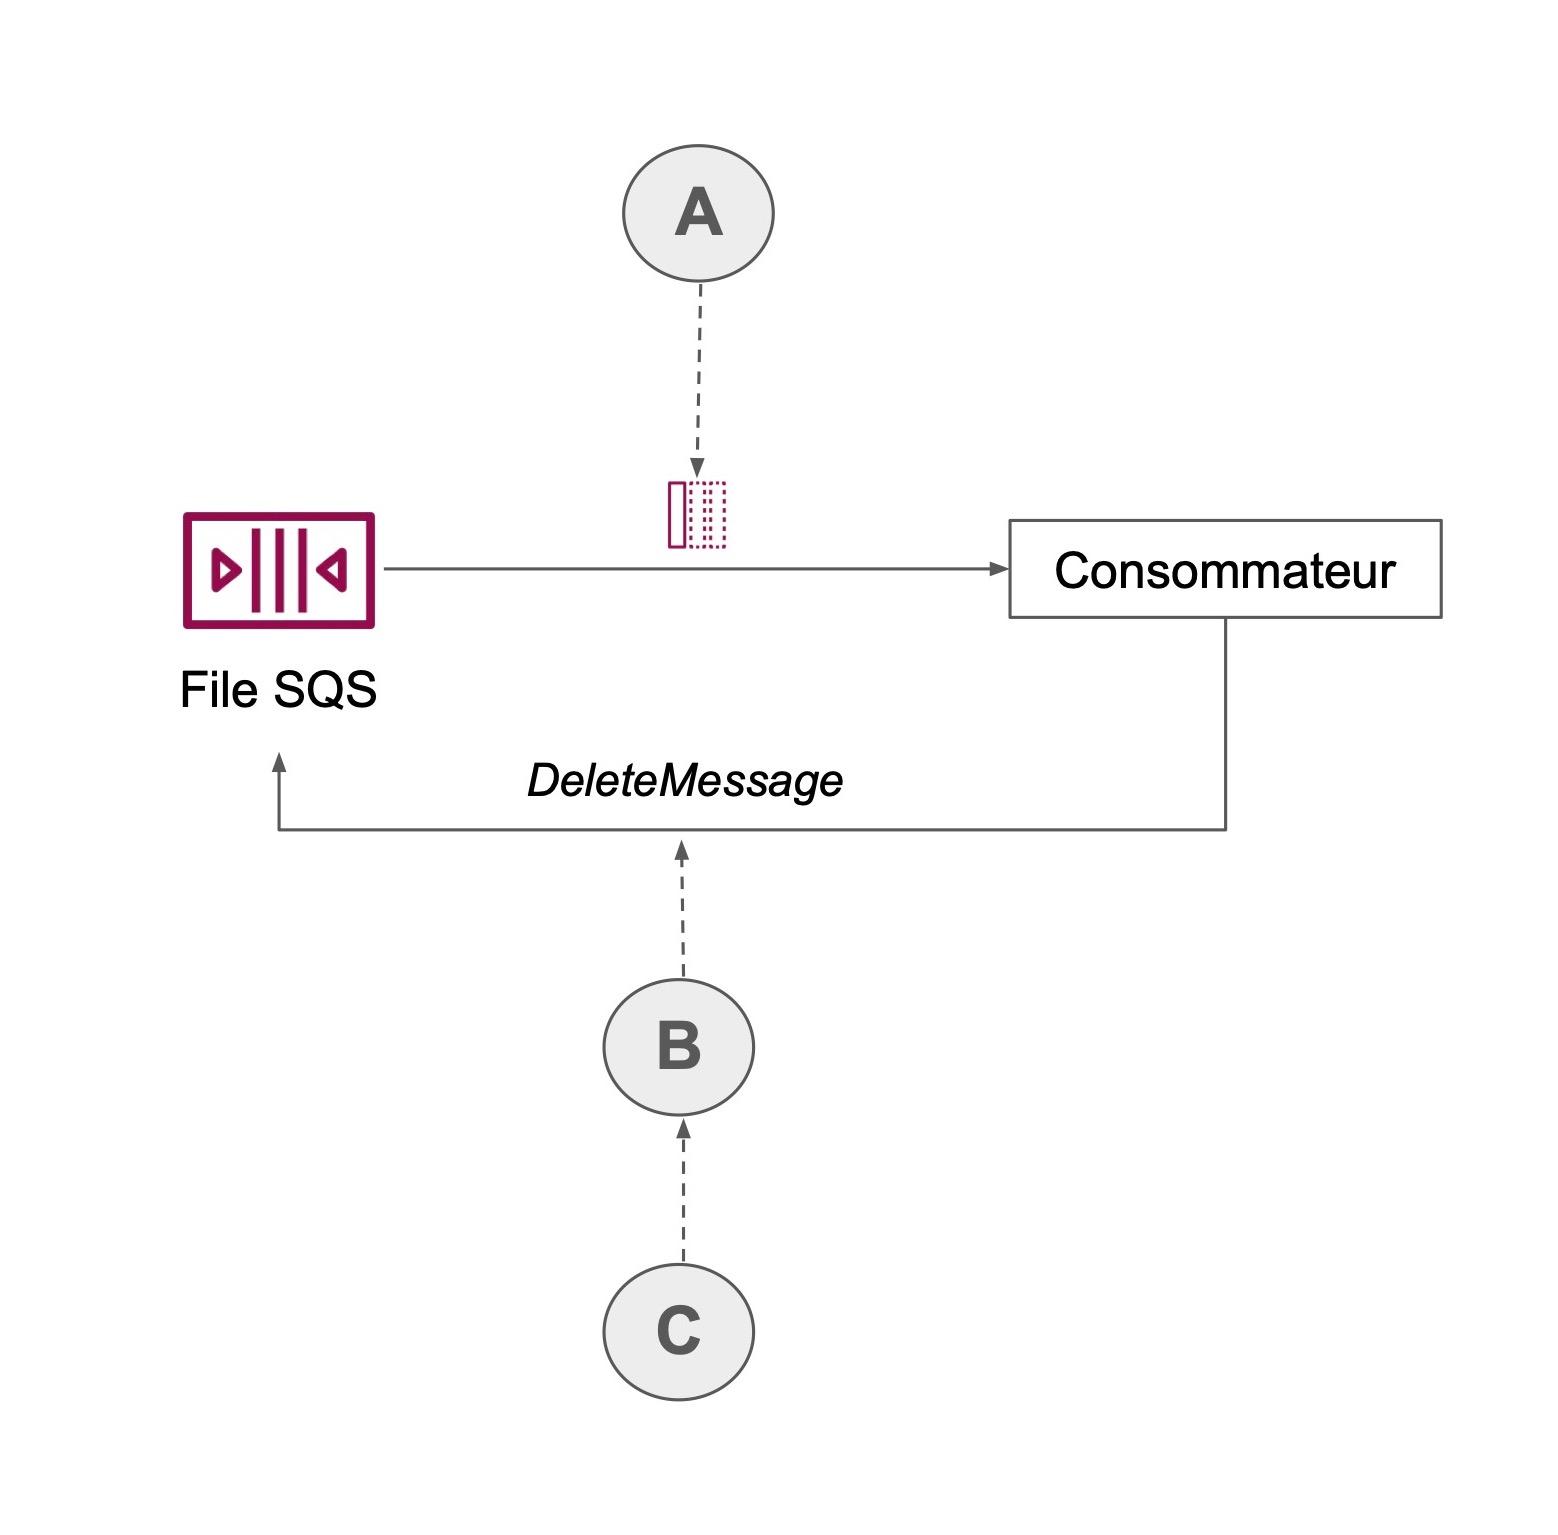 Une flèche (A) mène du File SQS vers le consommateur et retourne vers File SQS (DeleteMessage, B, C)